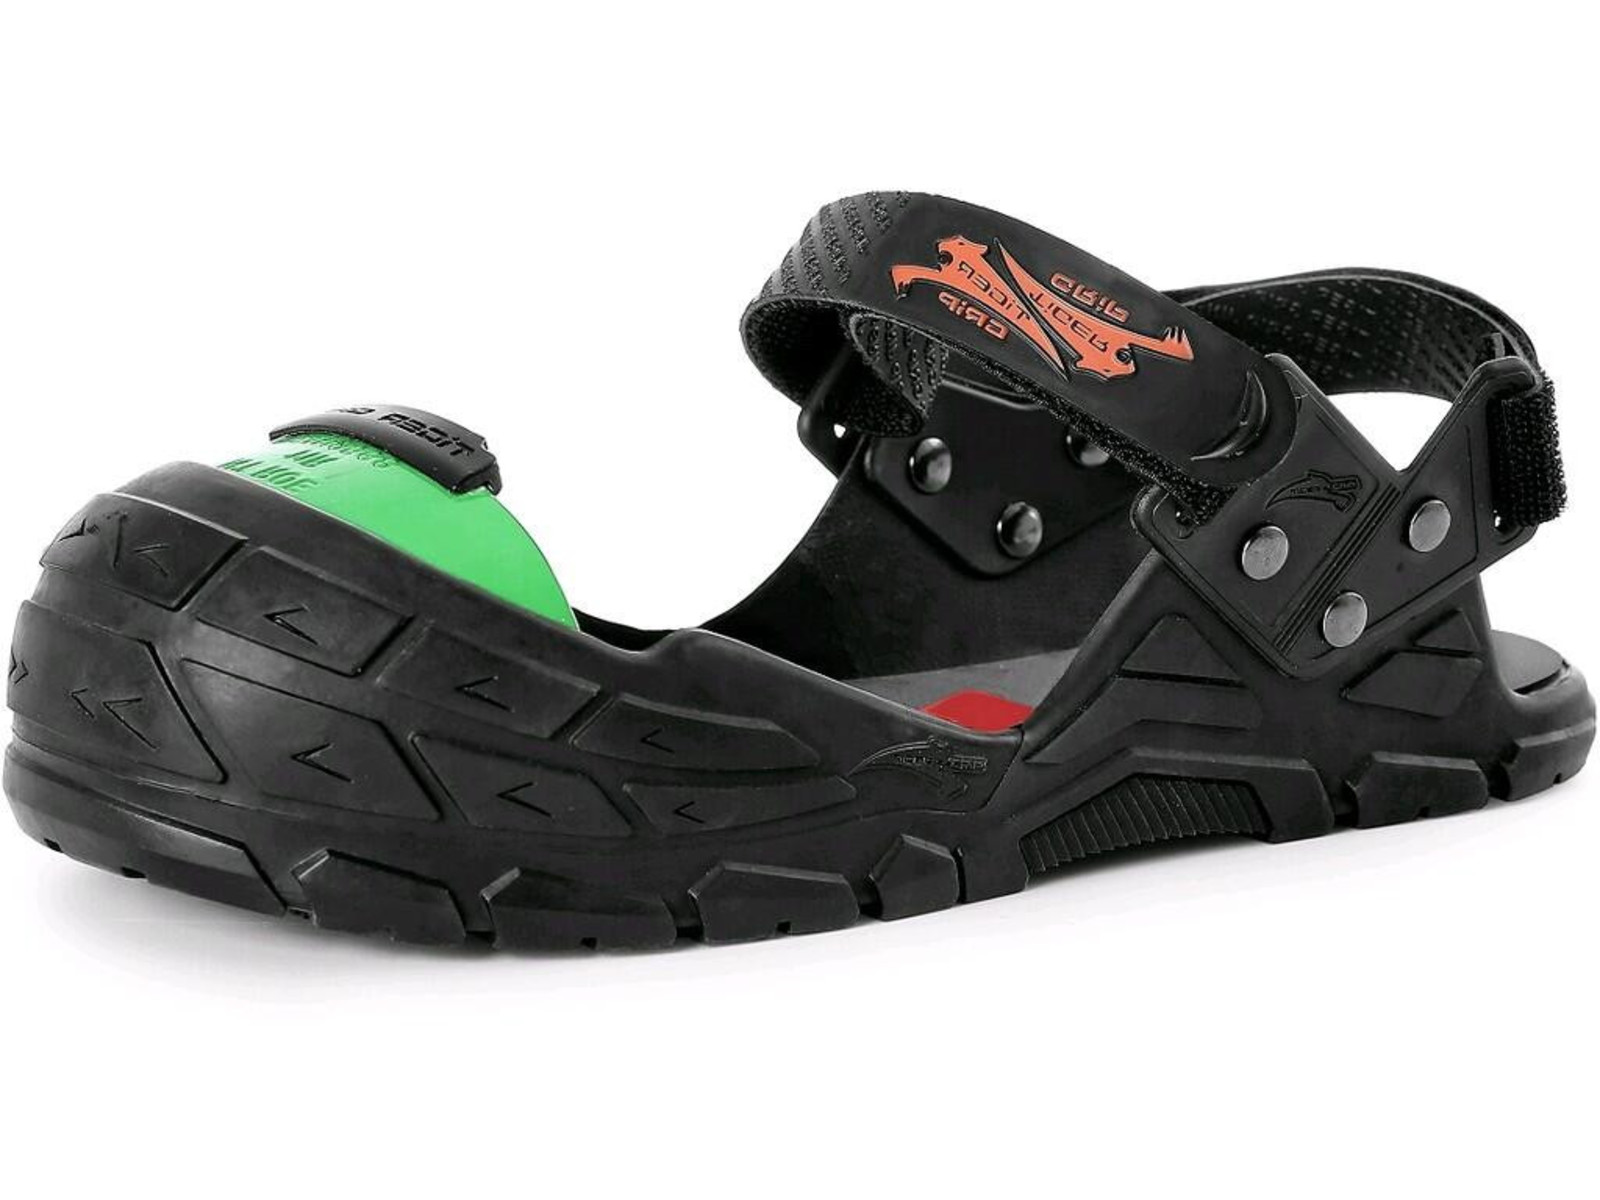 Bezpečnostný návlek na obuv CXS Visitor Integral S1P - veľkosť: XL, farba: čierna/zelená